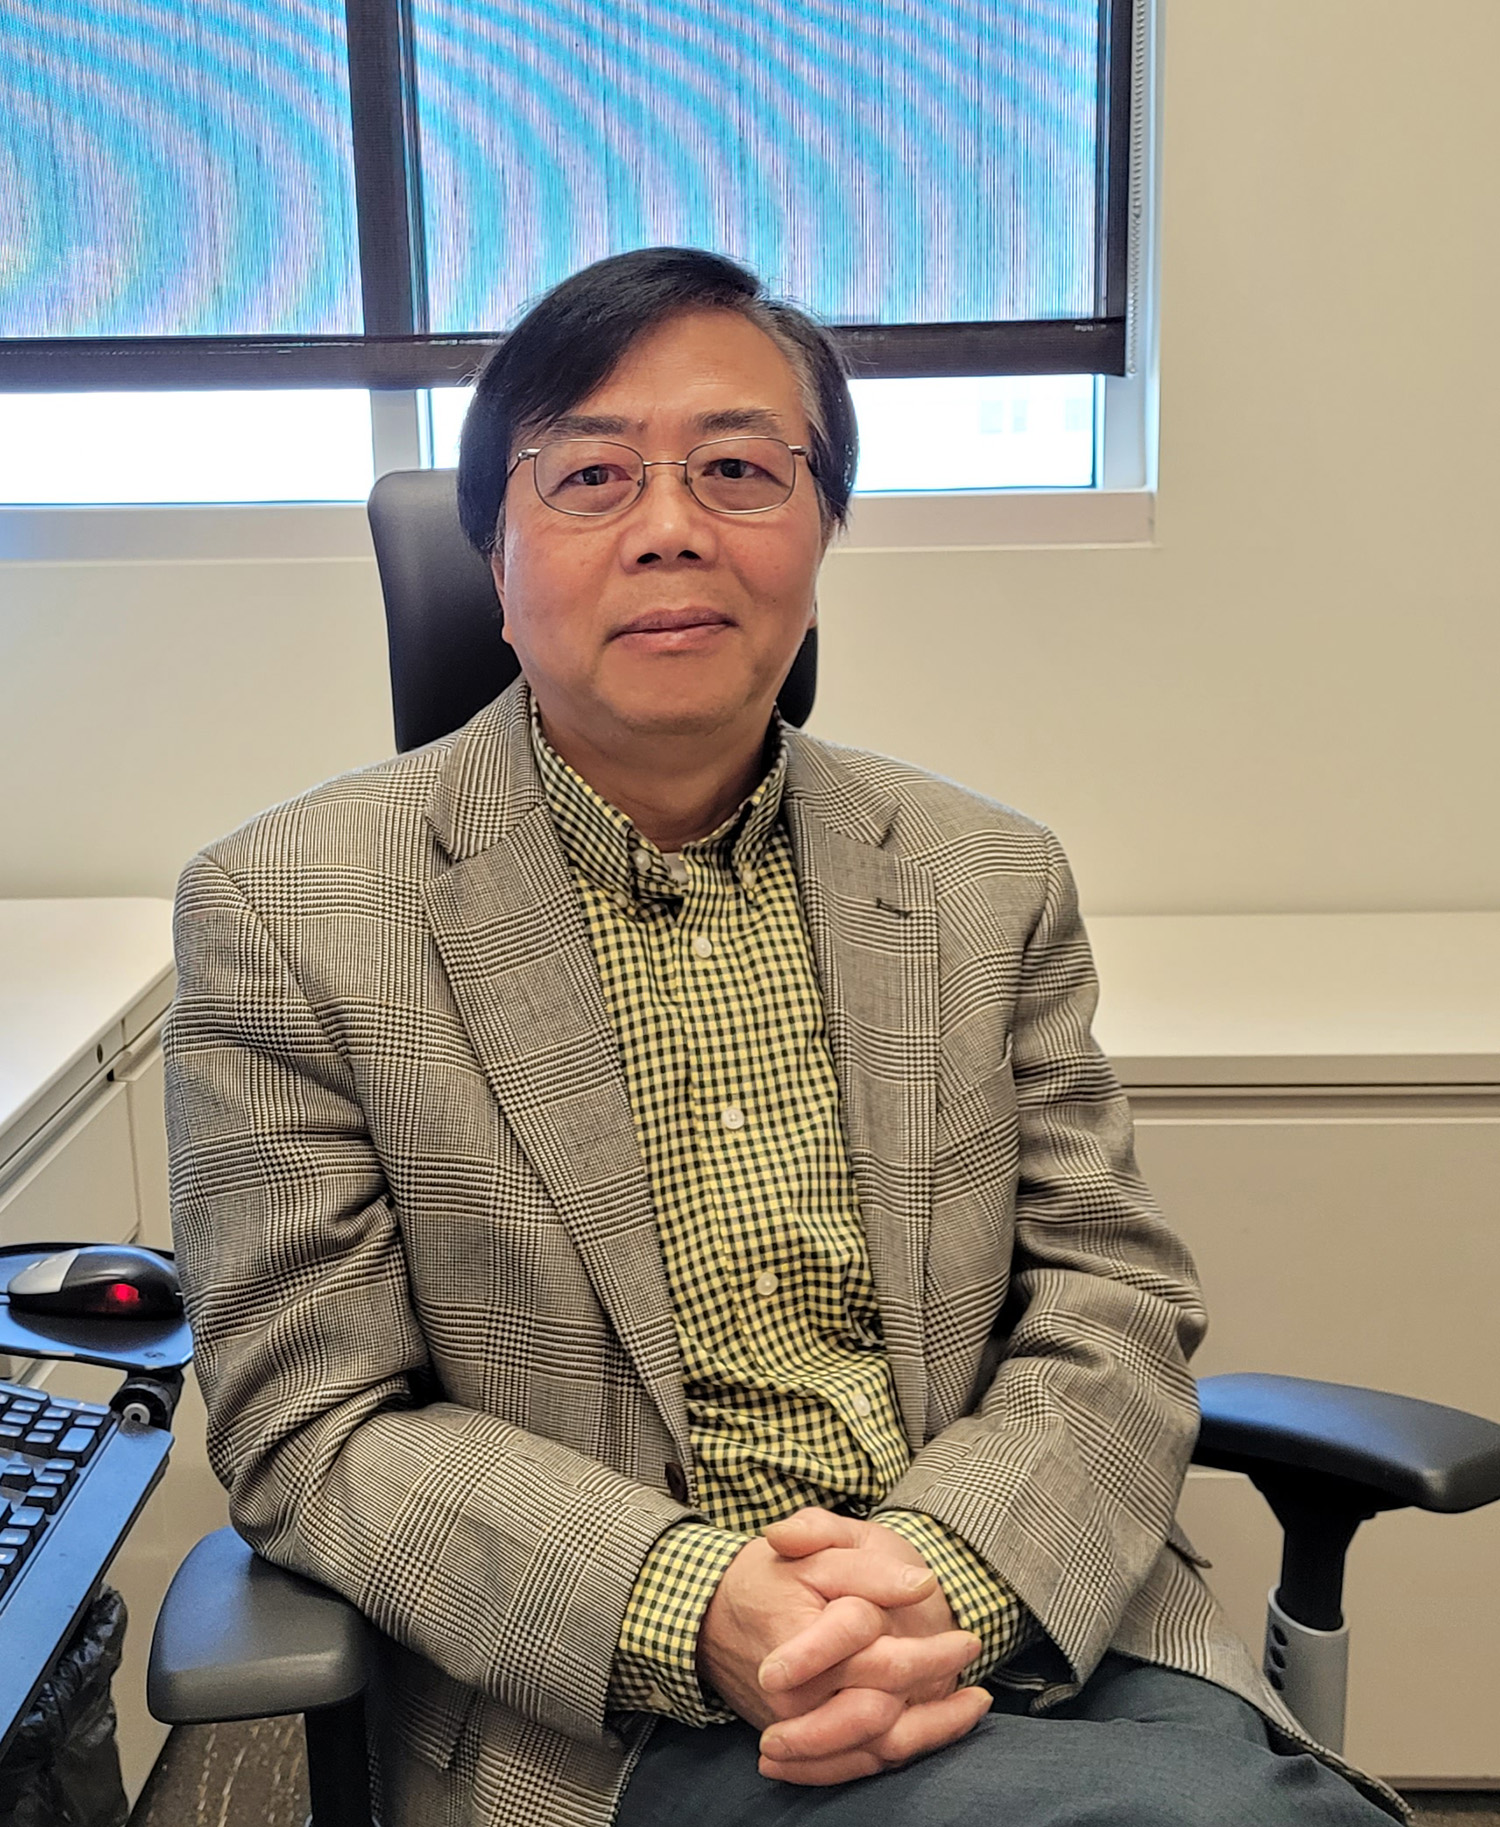 Dr. Robert Zheng